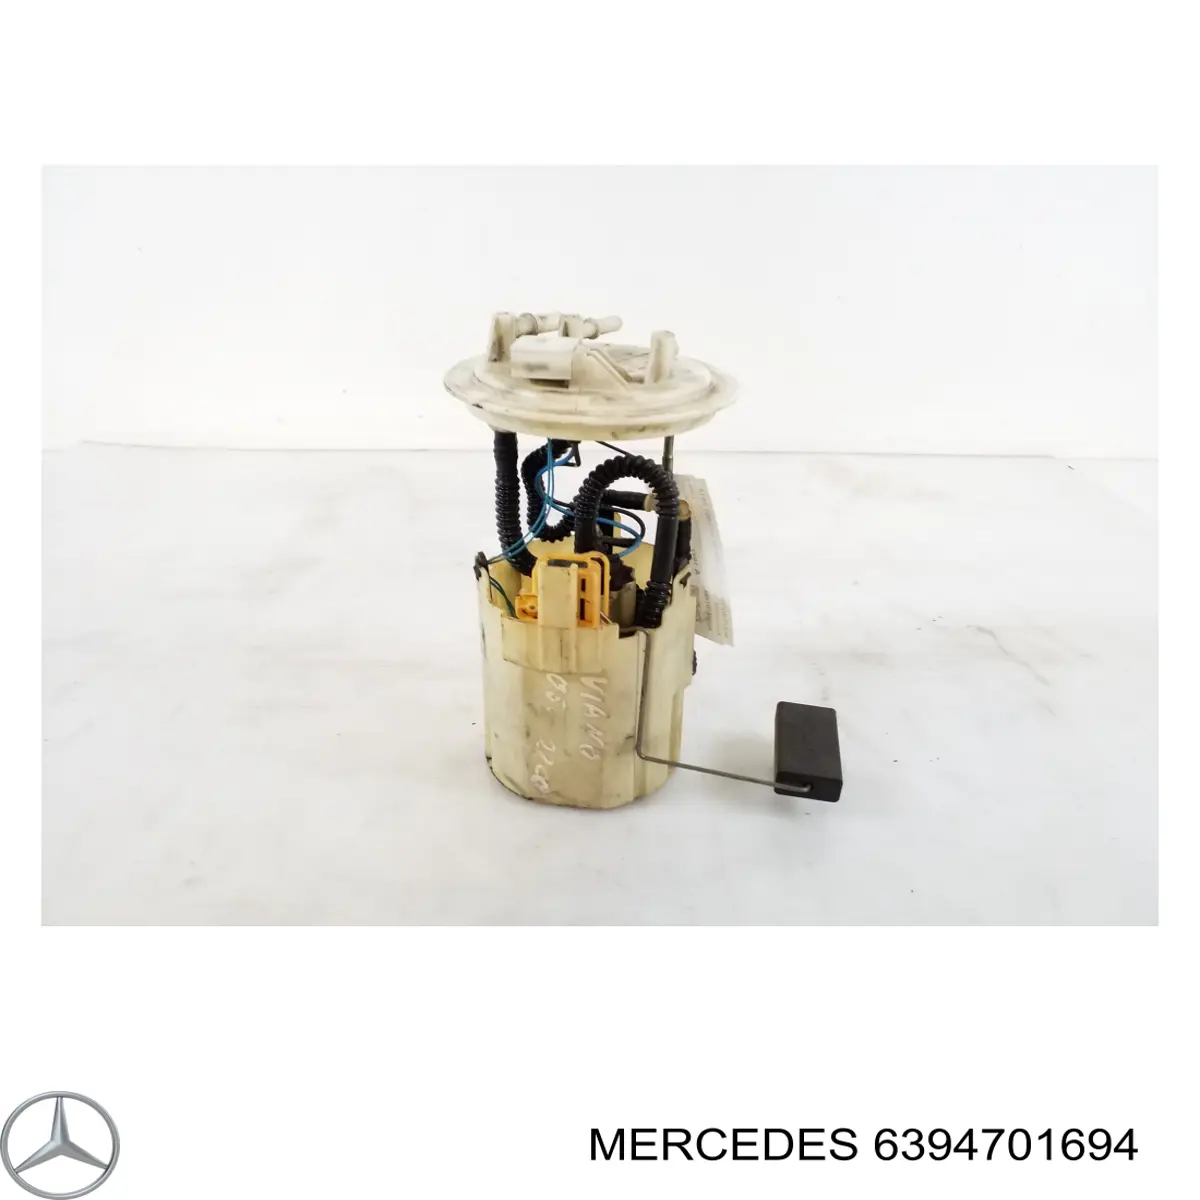 6394701694 Mercedes бензонасос